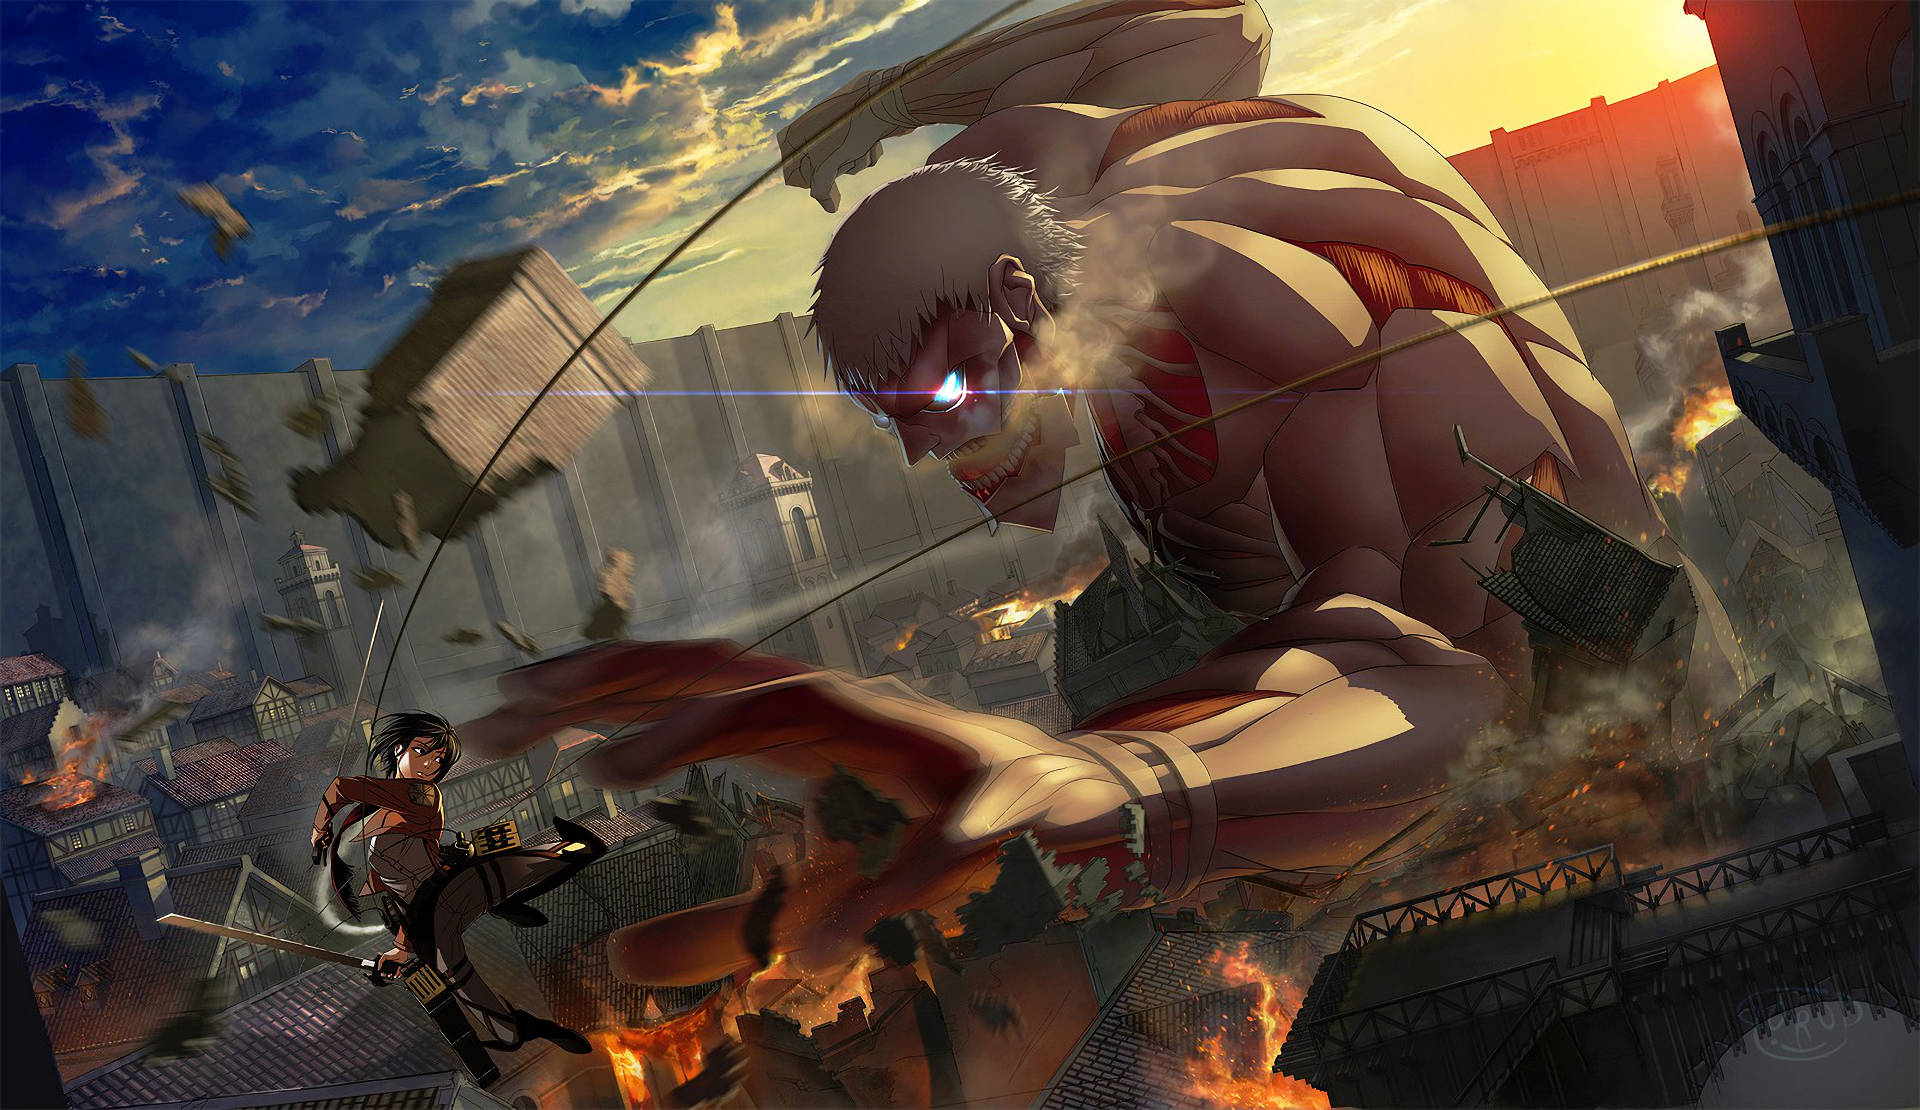 Armored Titan Mikasa Attack On Titan Background